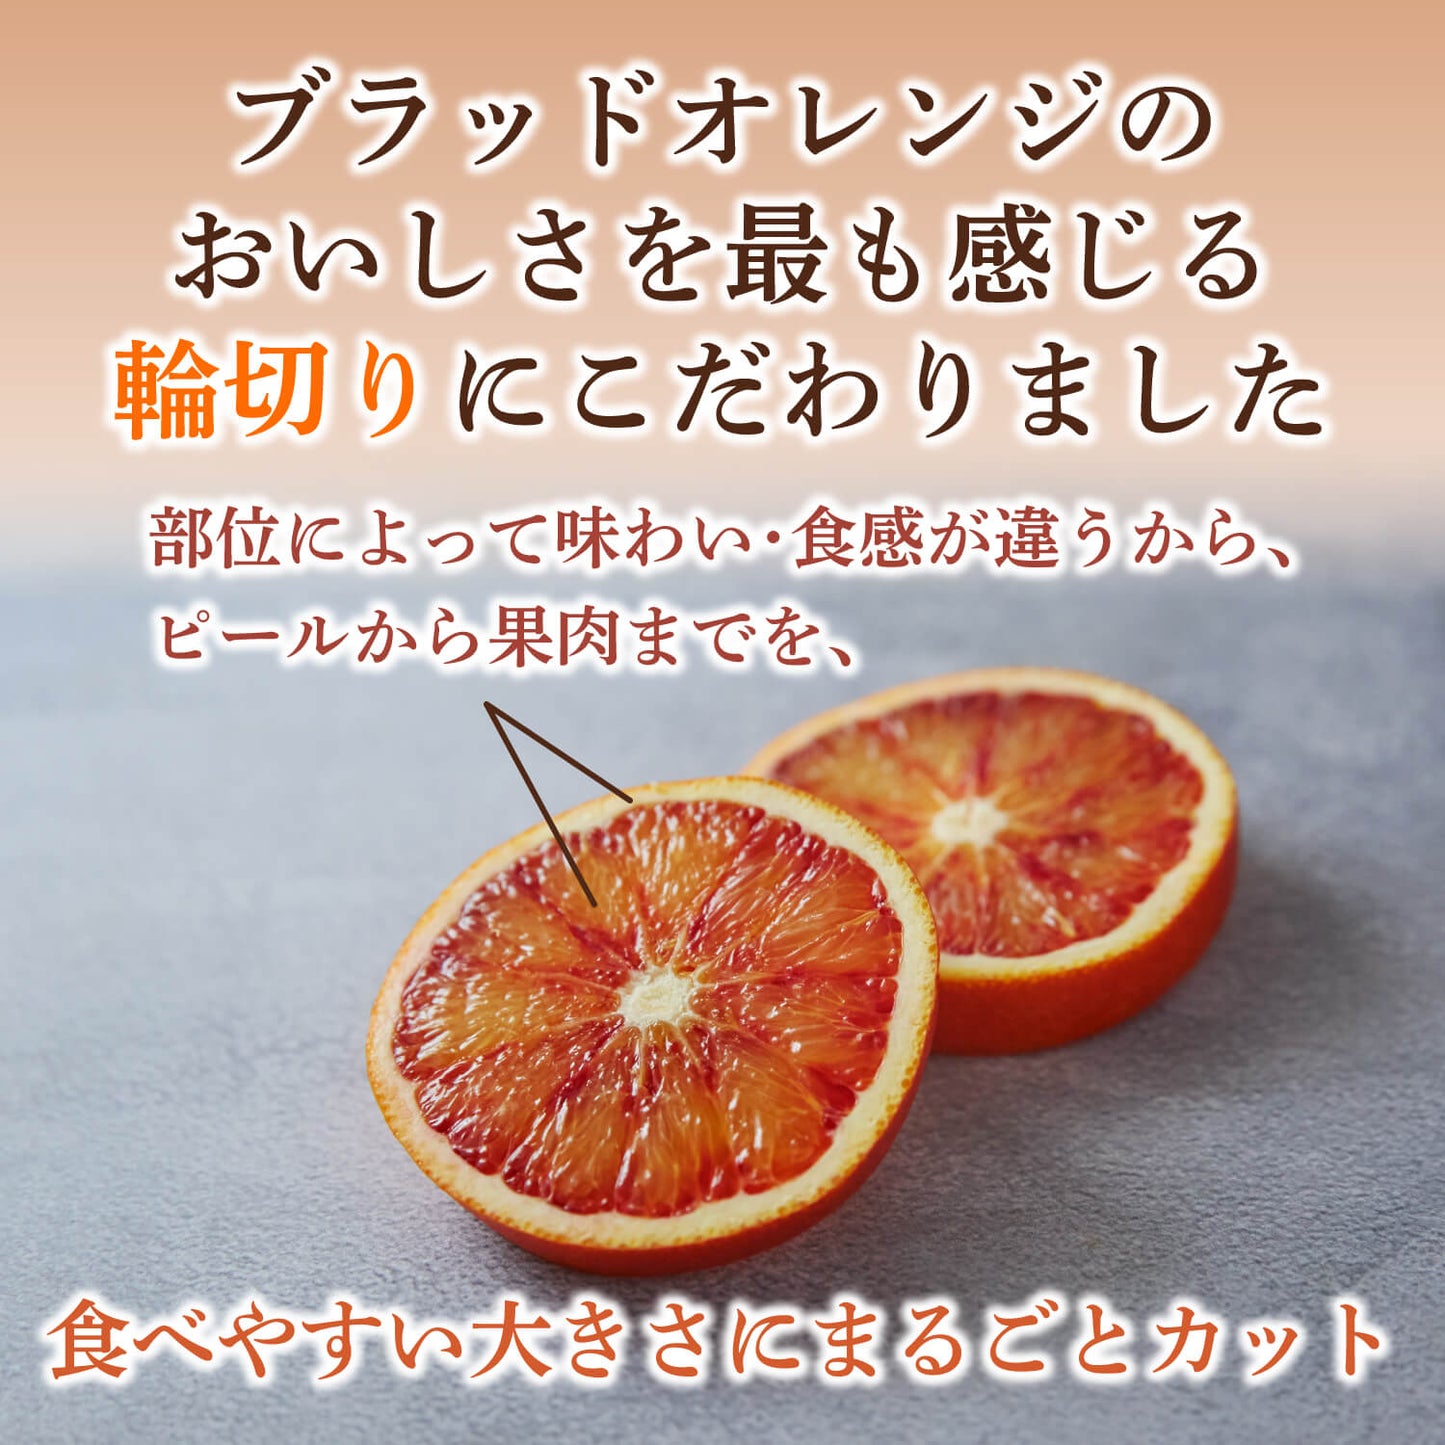 【ギフトセット】不知火・ブラッドオレンジフルーツチョコレート 2袋